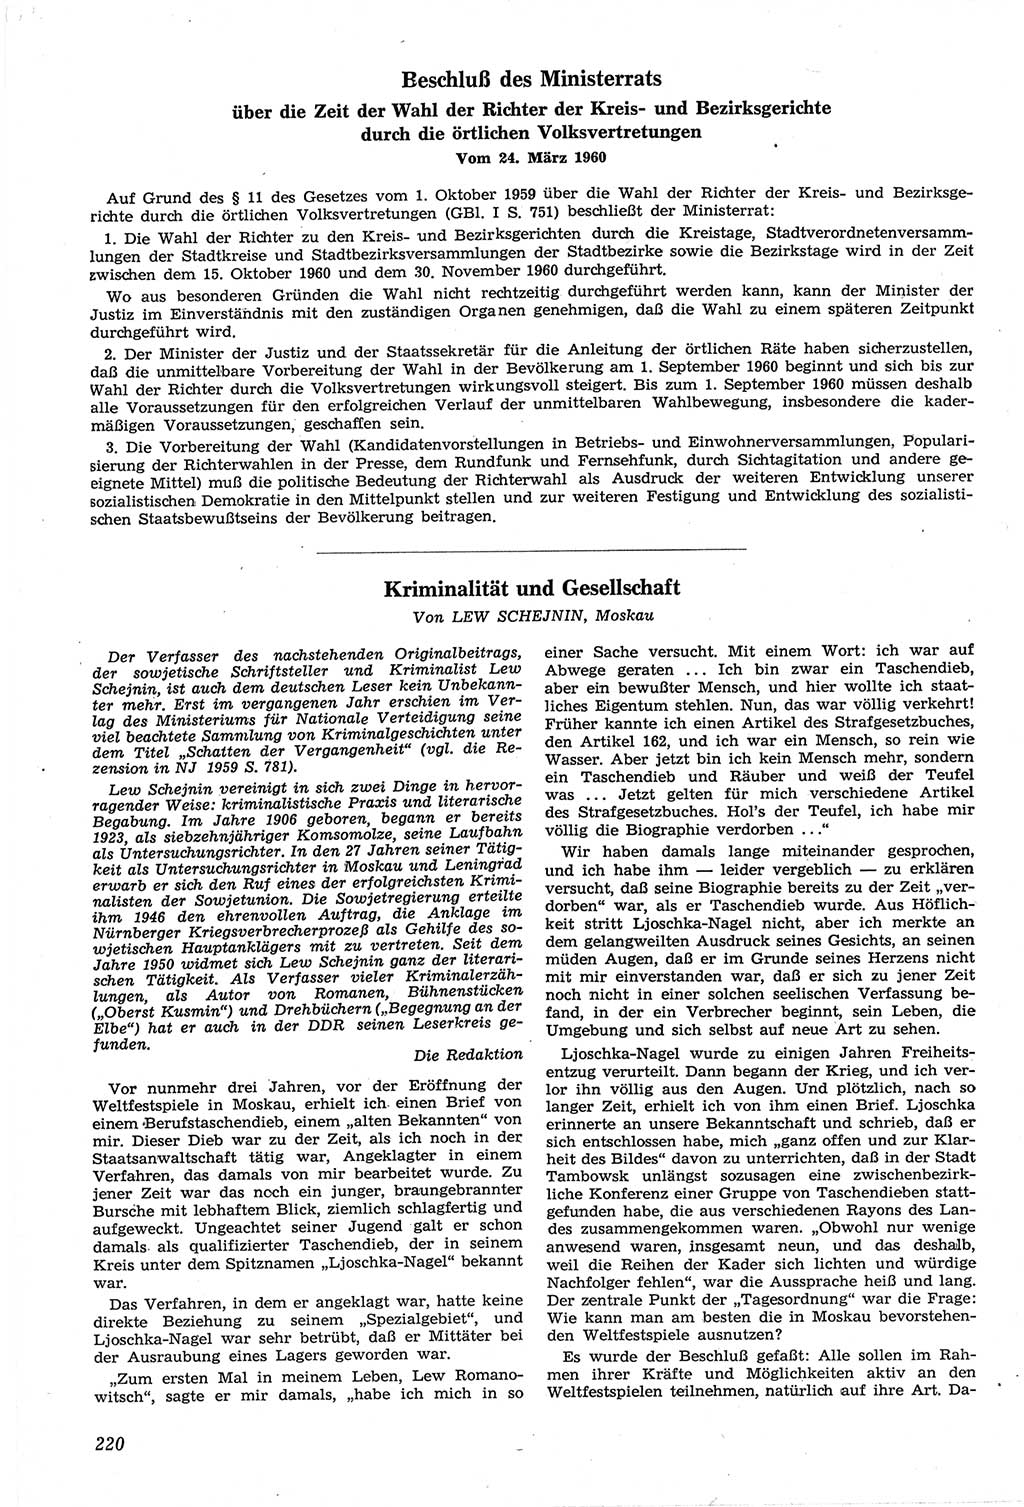 Neue Justiz (NJ), Zeitschrift für Recht und Rechtswissenschaft [Deutsche Demokratische Republik (DDR)], 14. Jahrgang 1960, Seite 220 (NJ DDR 1960, S. 220)